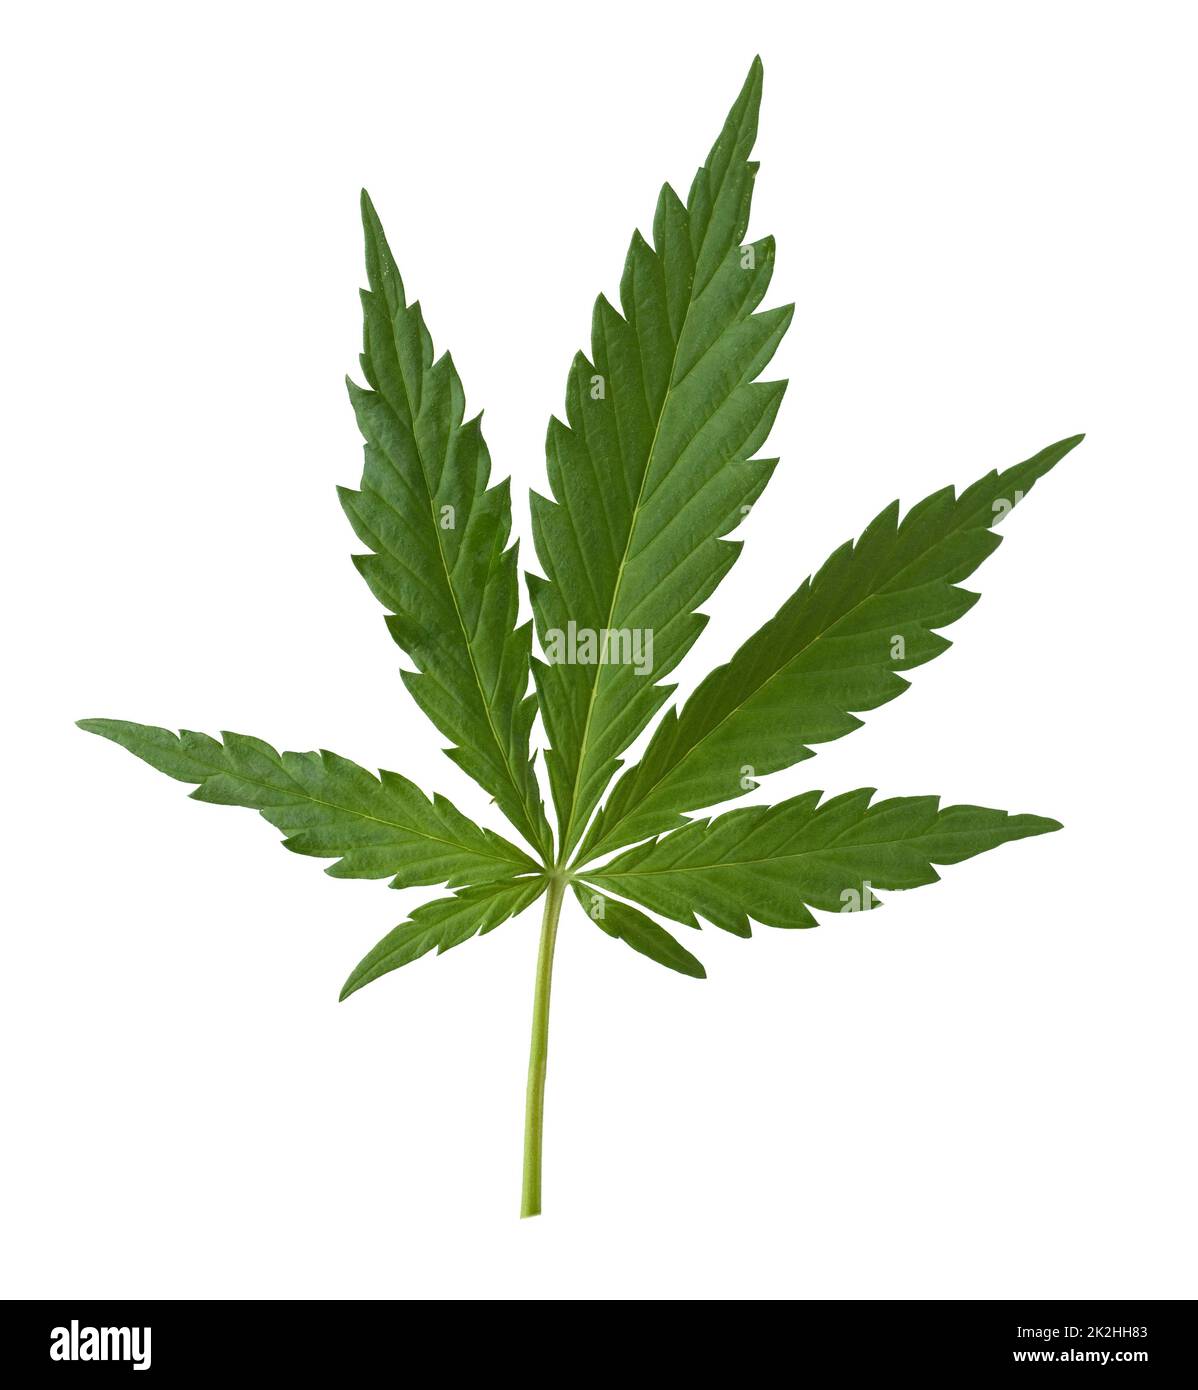 Hanf, cannabis indica ist eine Nutz- und Rauschgiftpflanze die auch in der Medzin eingesetzt wird. Canapa, cannabis indica è un piano utile e narcotico Foto Stock